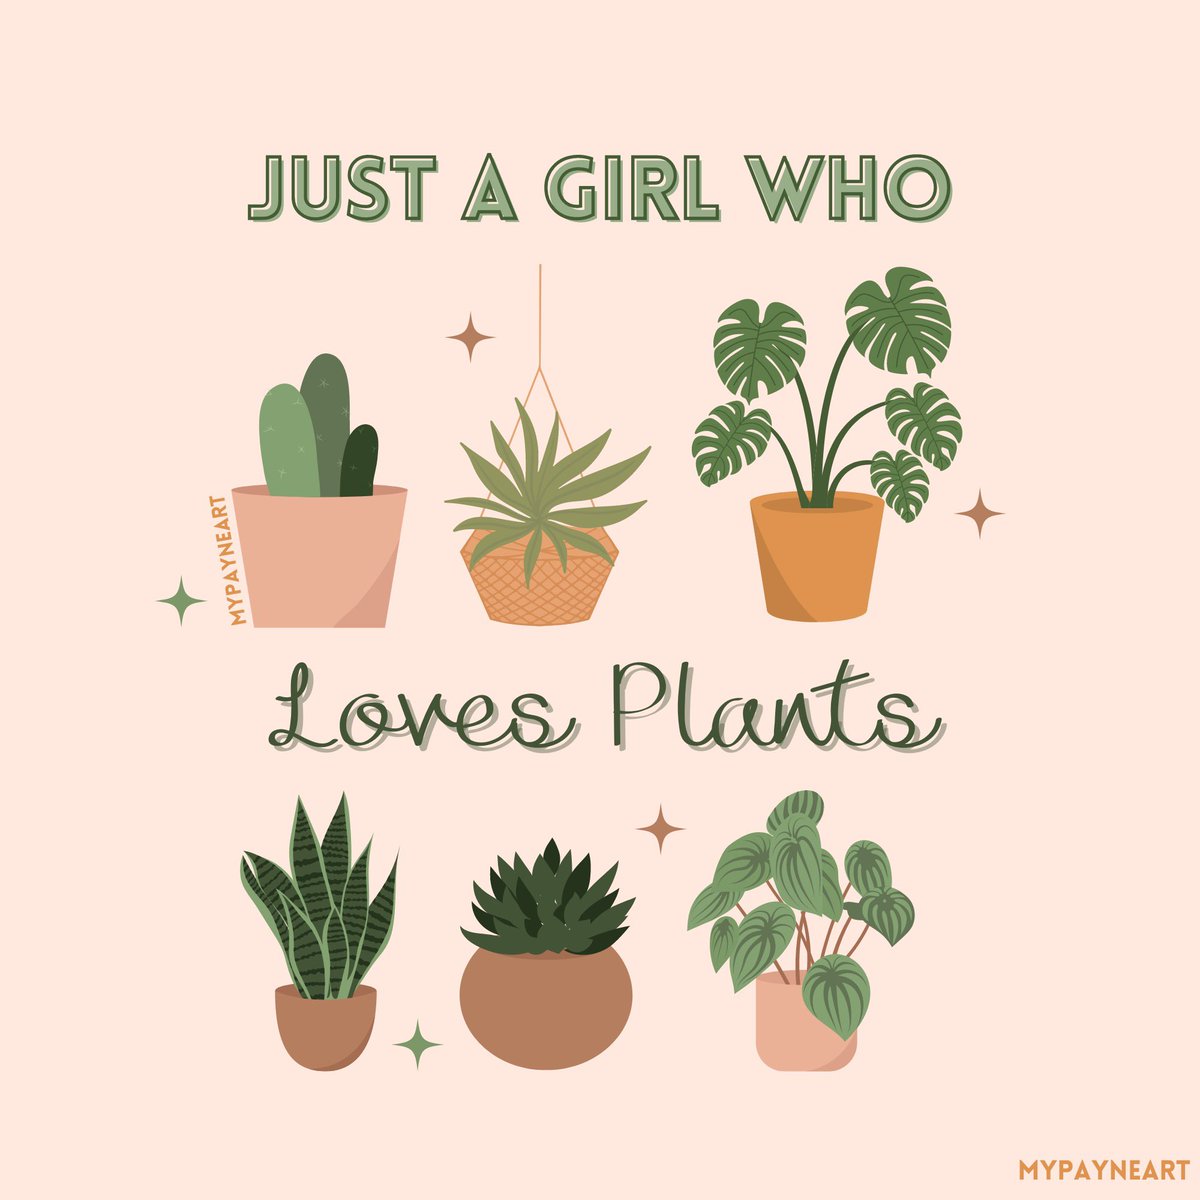 For the girlies who love #plants! 
.
.
.
#plantgirly #plantlover #plantlovers #graphicdesign #graphicdesigner #graphicdesigncommunity #lifeofagraphicdesigner #designer #graphic #girlartist #artist #artislife #artoftheday #digital #digitalart #art #digitaldesign